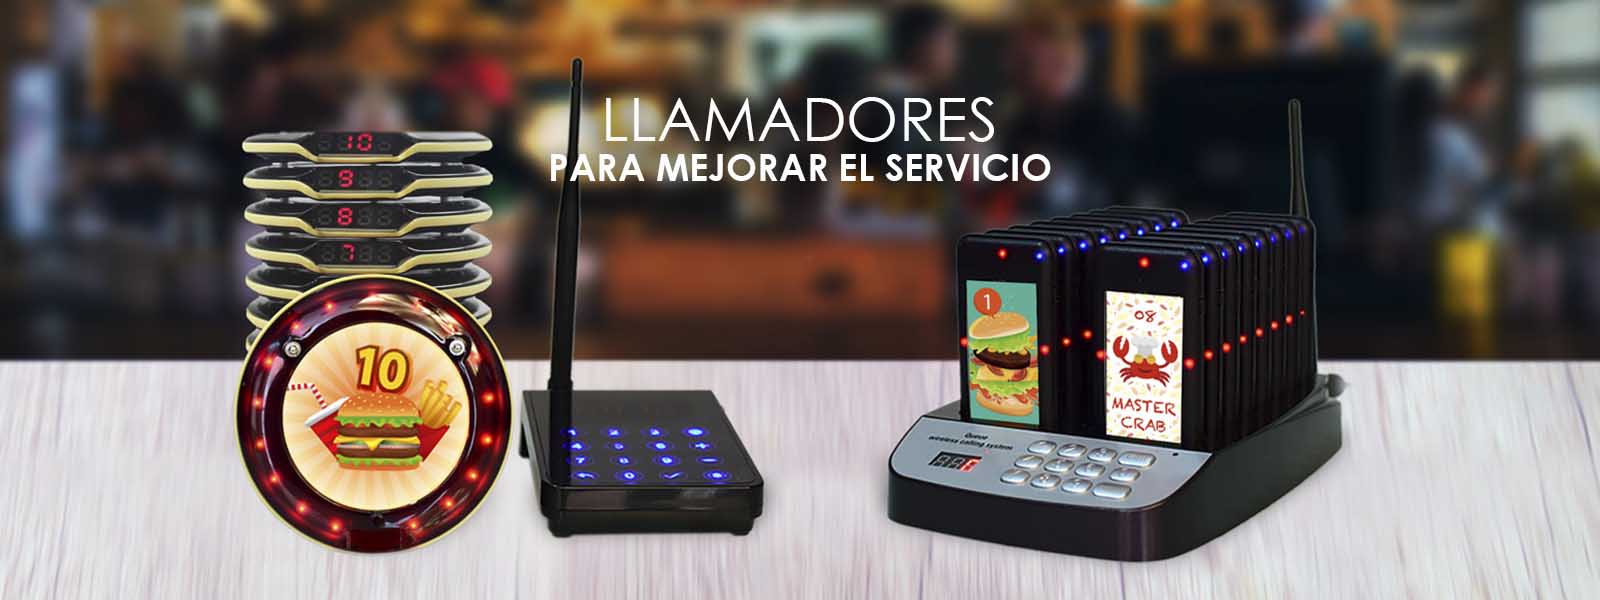 Llamadores para restaurantes Colombia